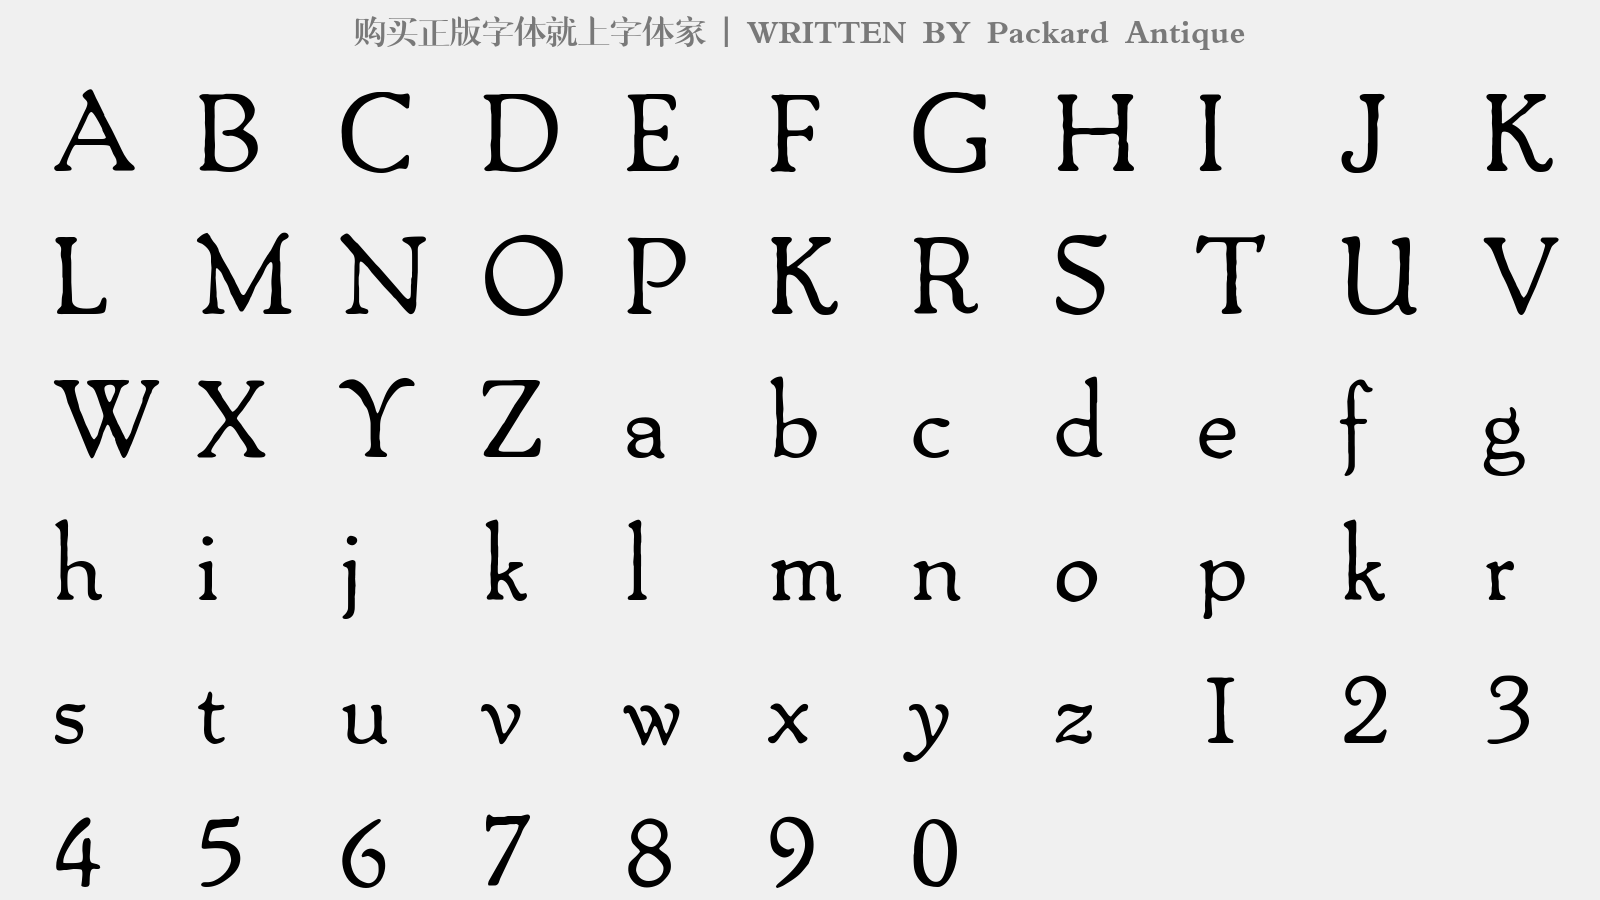 Packard Antique - 大写字母/小写字母/数字